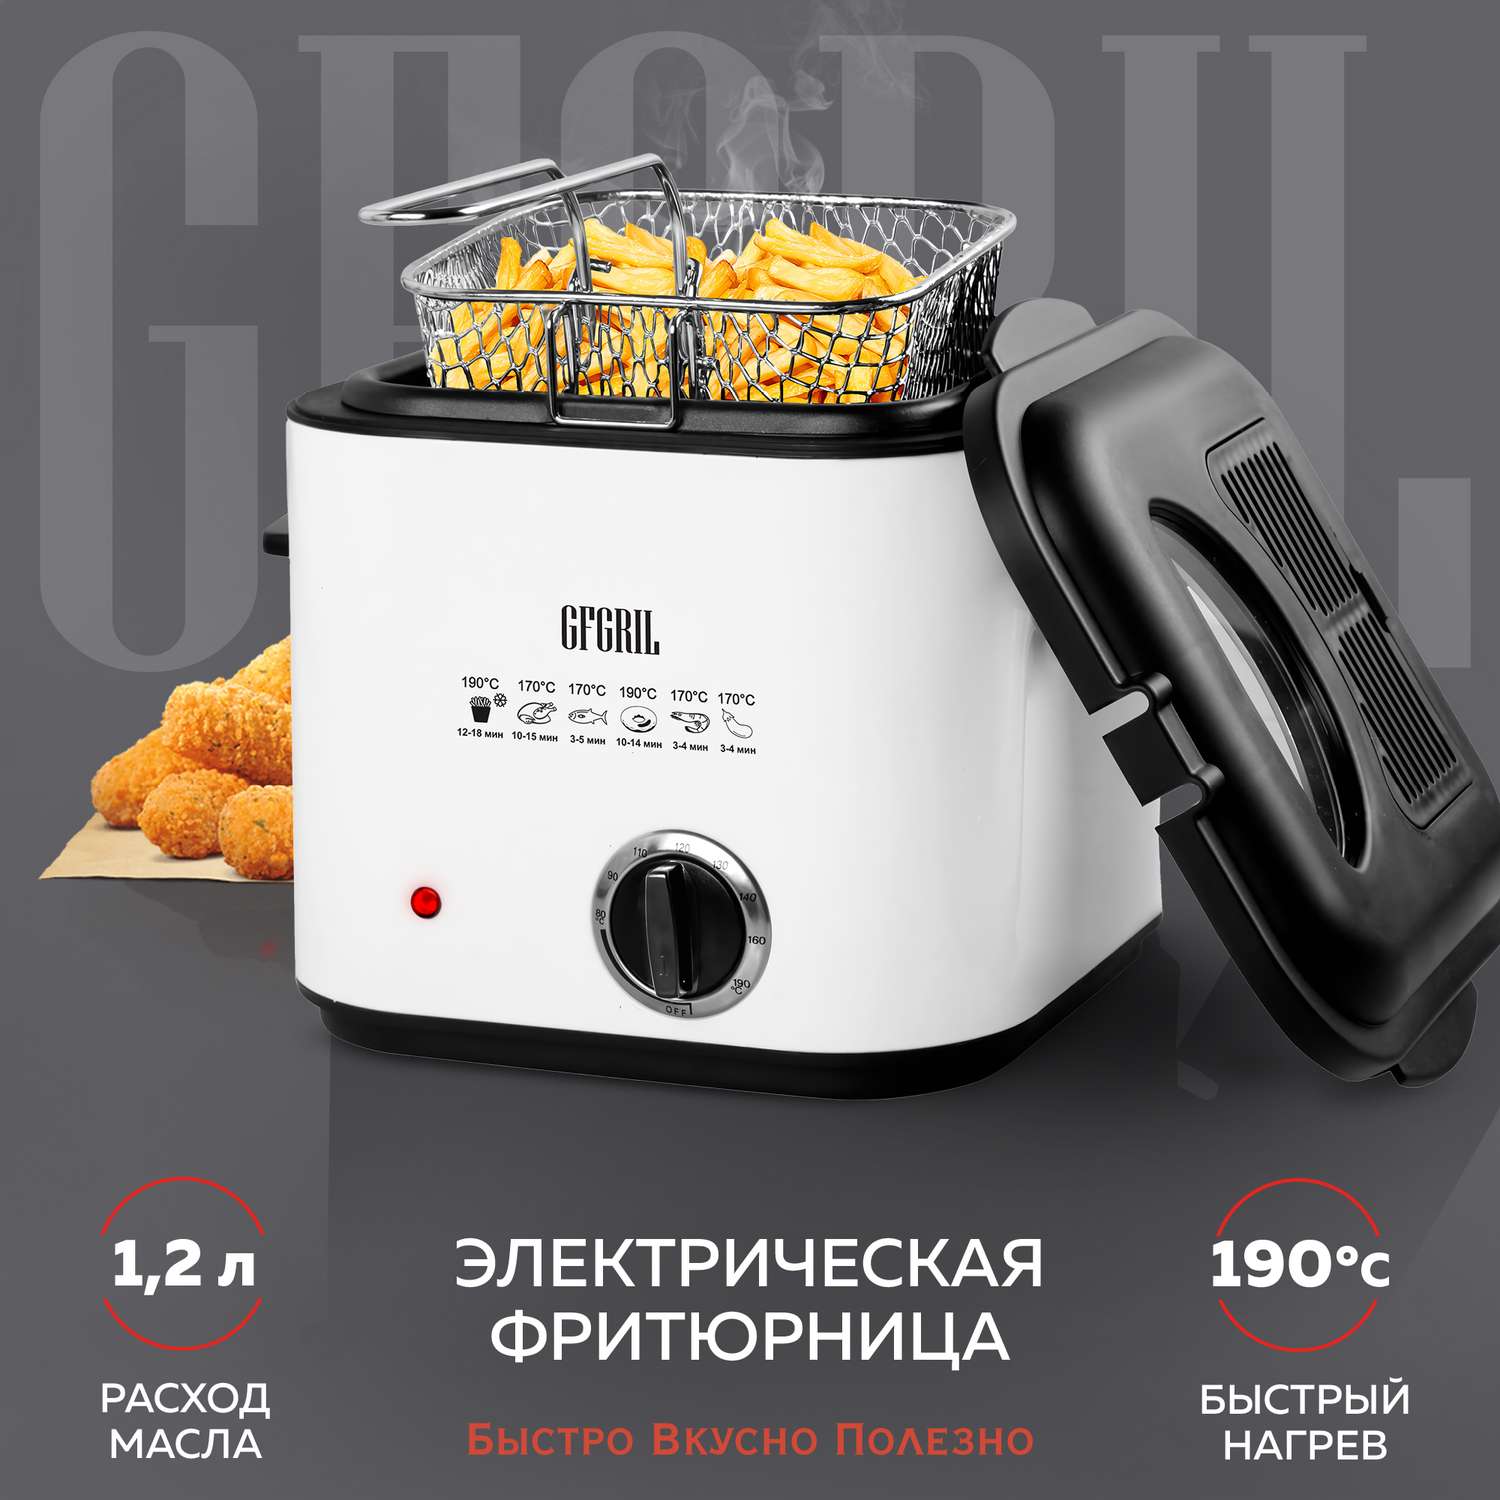 Фритюрница GFGRIL GFF-012 Easy Cook объем 1.2 л со съемной корзиной и крышкой - фото 1